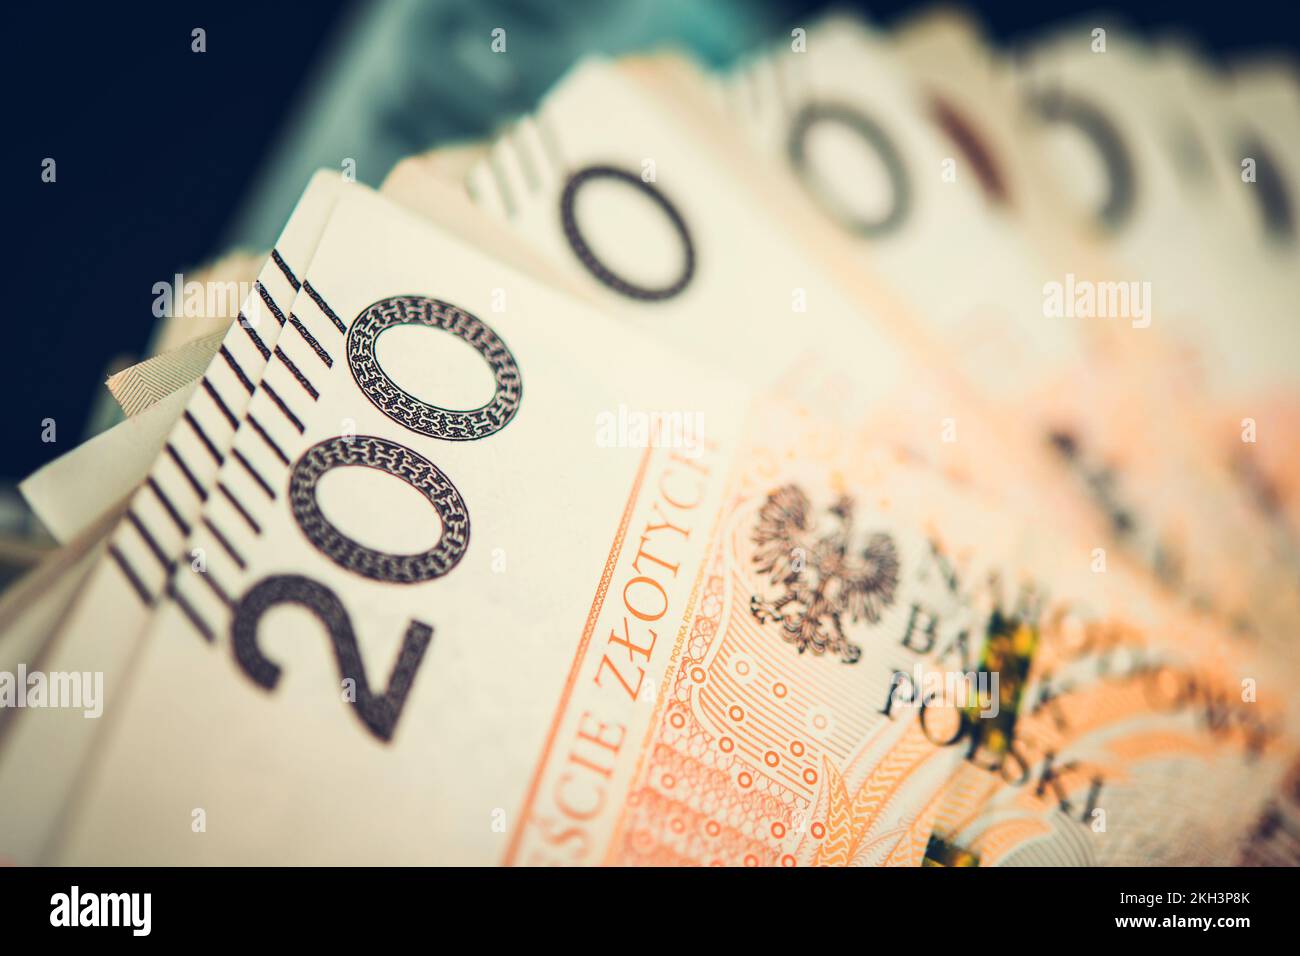 Zloty polaco Dinero en efectivo Closeup. Pila de dos cientos de billetes de moneda nacional de Polonia. Tema de Finanzas, Negocios y Economía. Foto de stock